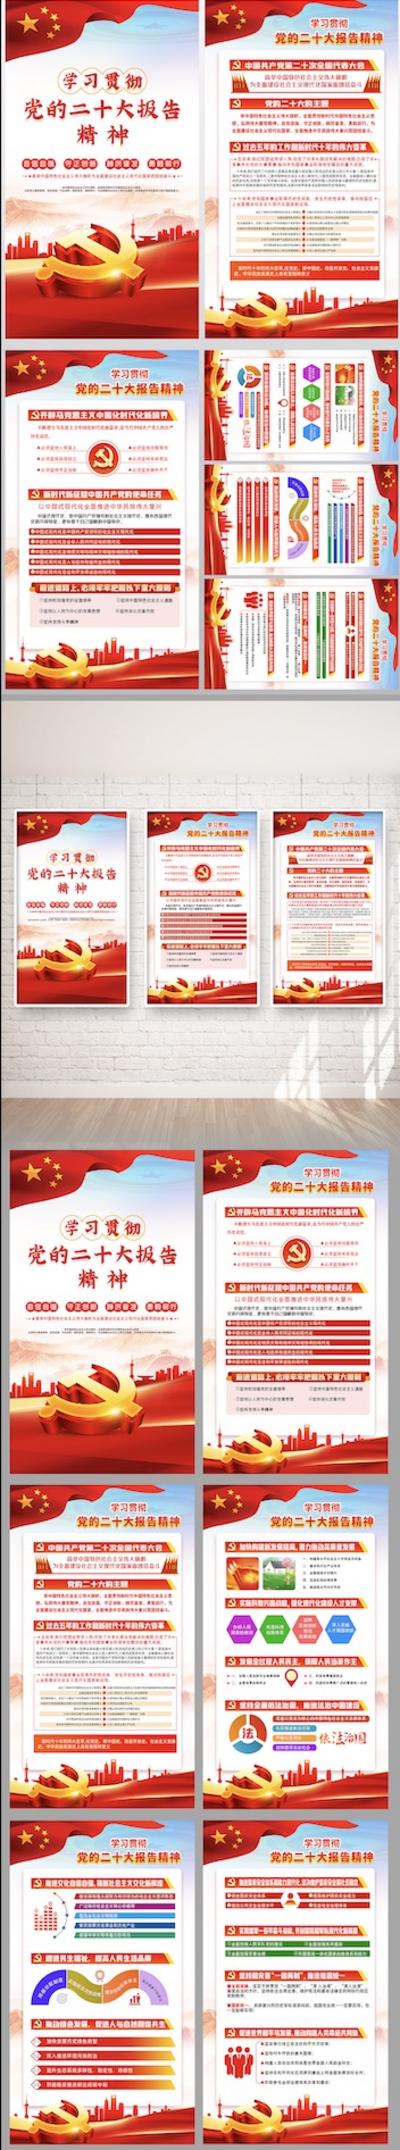 南门网 广告 海报 展板 党建 党政 文化 挂壁 二十大 两会 精神